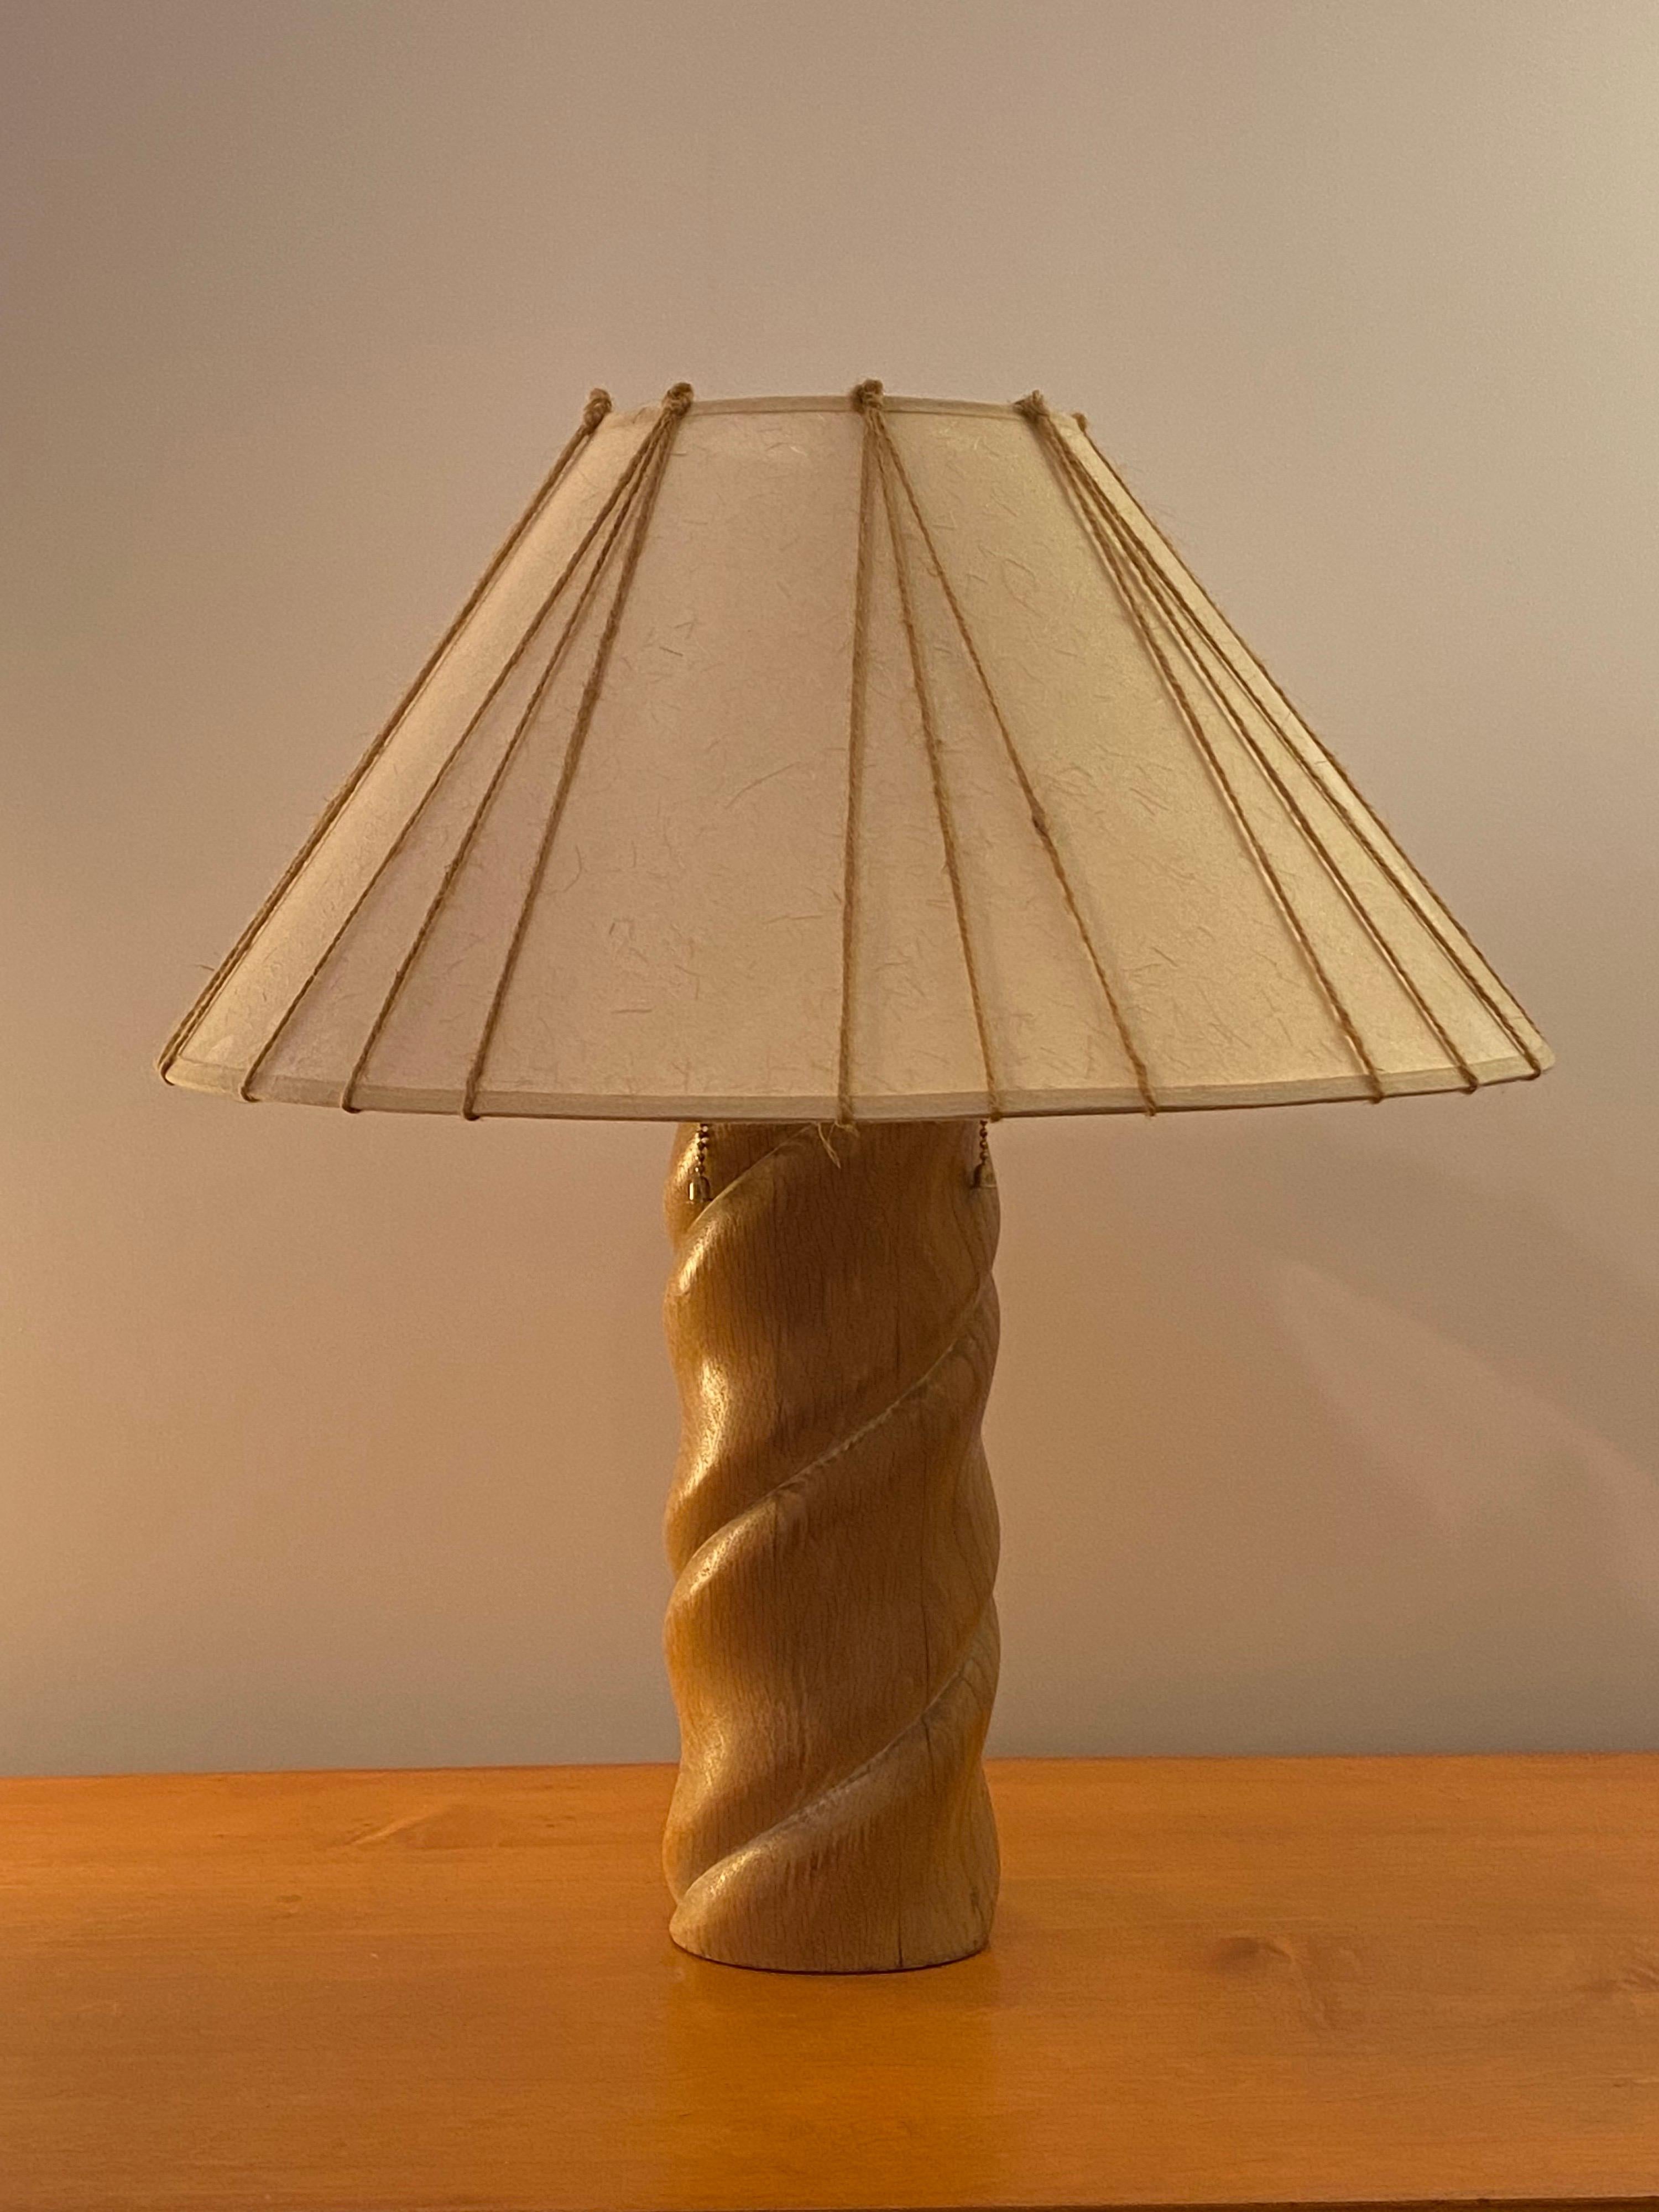 Lampe de table en bois tourné Russel Wright avec une finition blanche légèrement décapée. Lampe du début des années 1950 produite par Fairmont Lamp Company. L'abat-jour d'origine a été recouvert de papier très semblable à l'original, et le cordon a